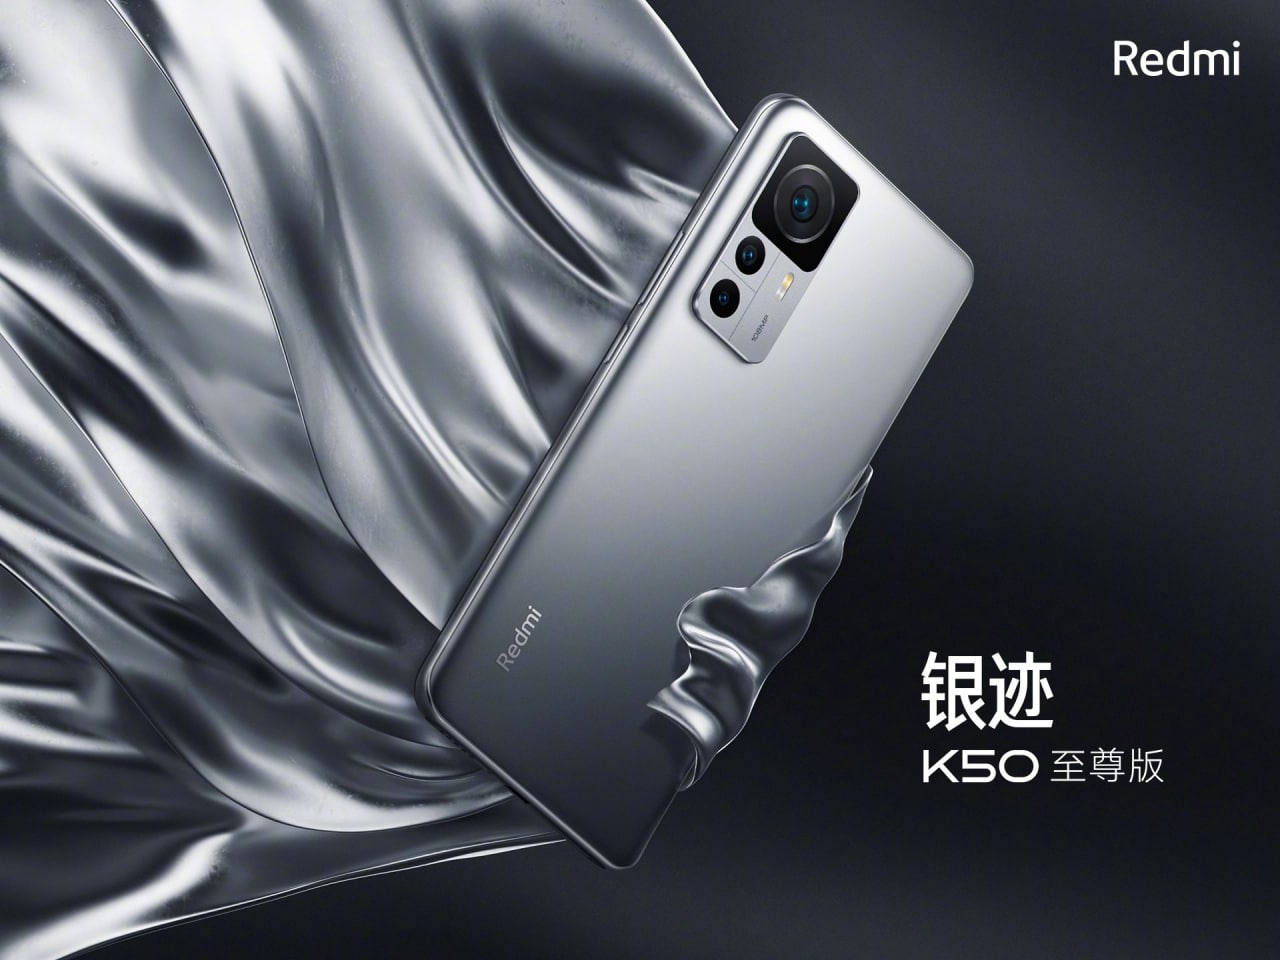 ردمی از گوشی K50 Extreme Edition رونمایی کرد